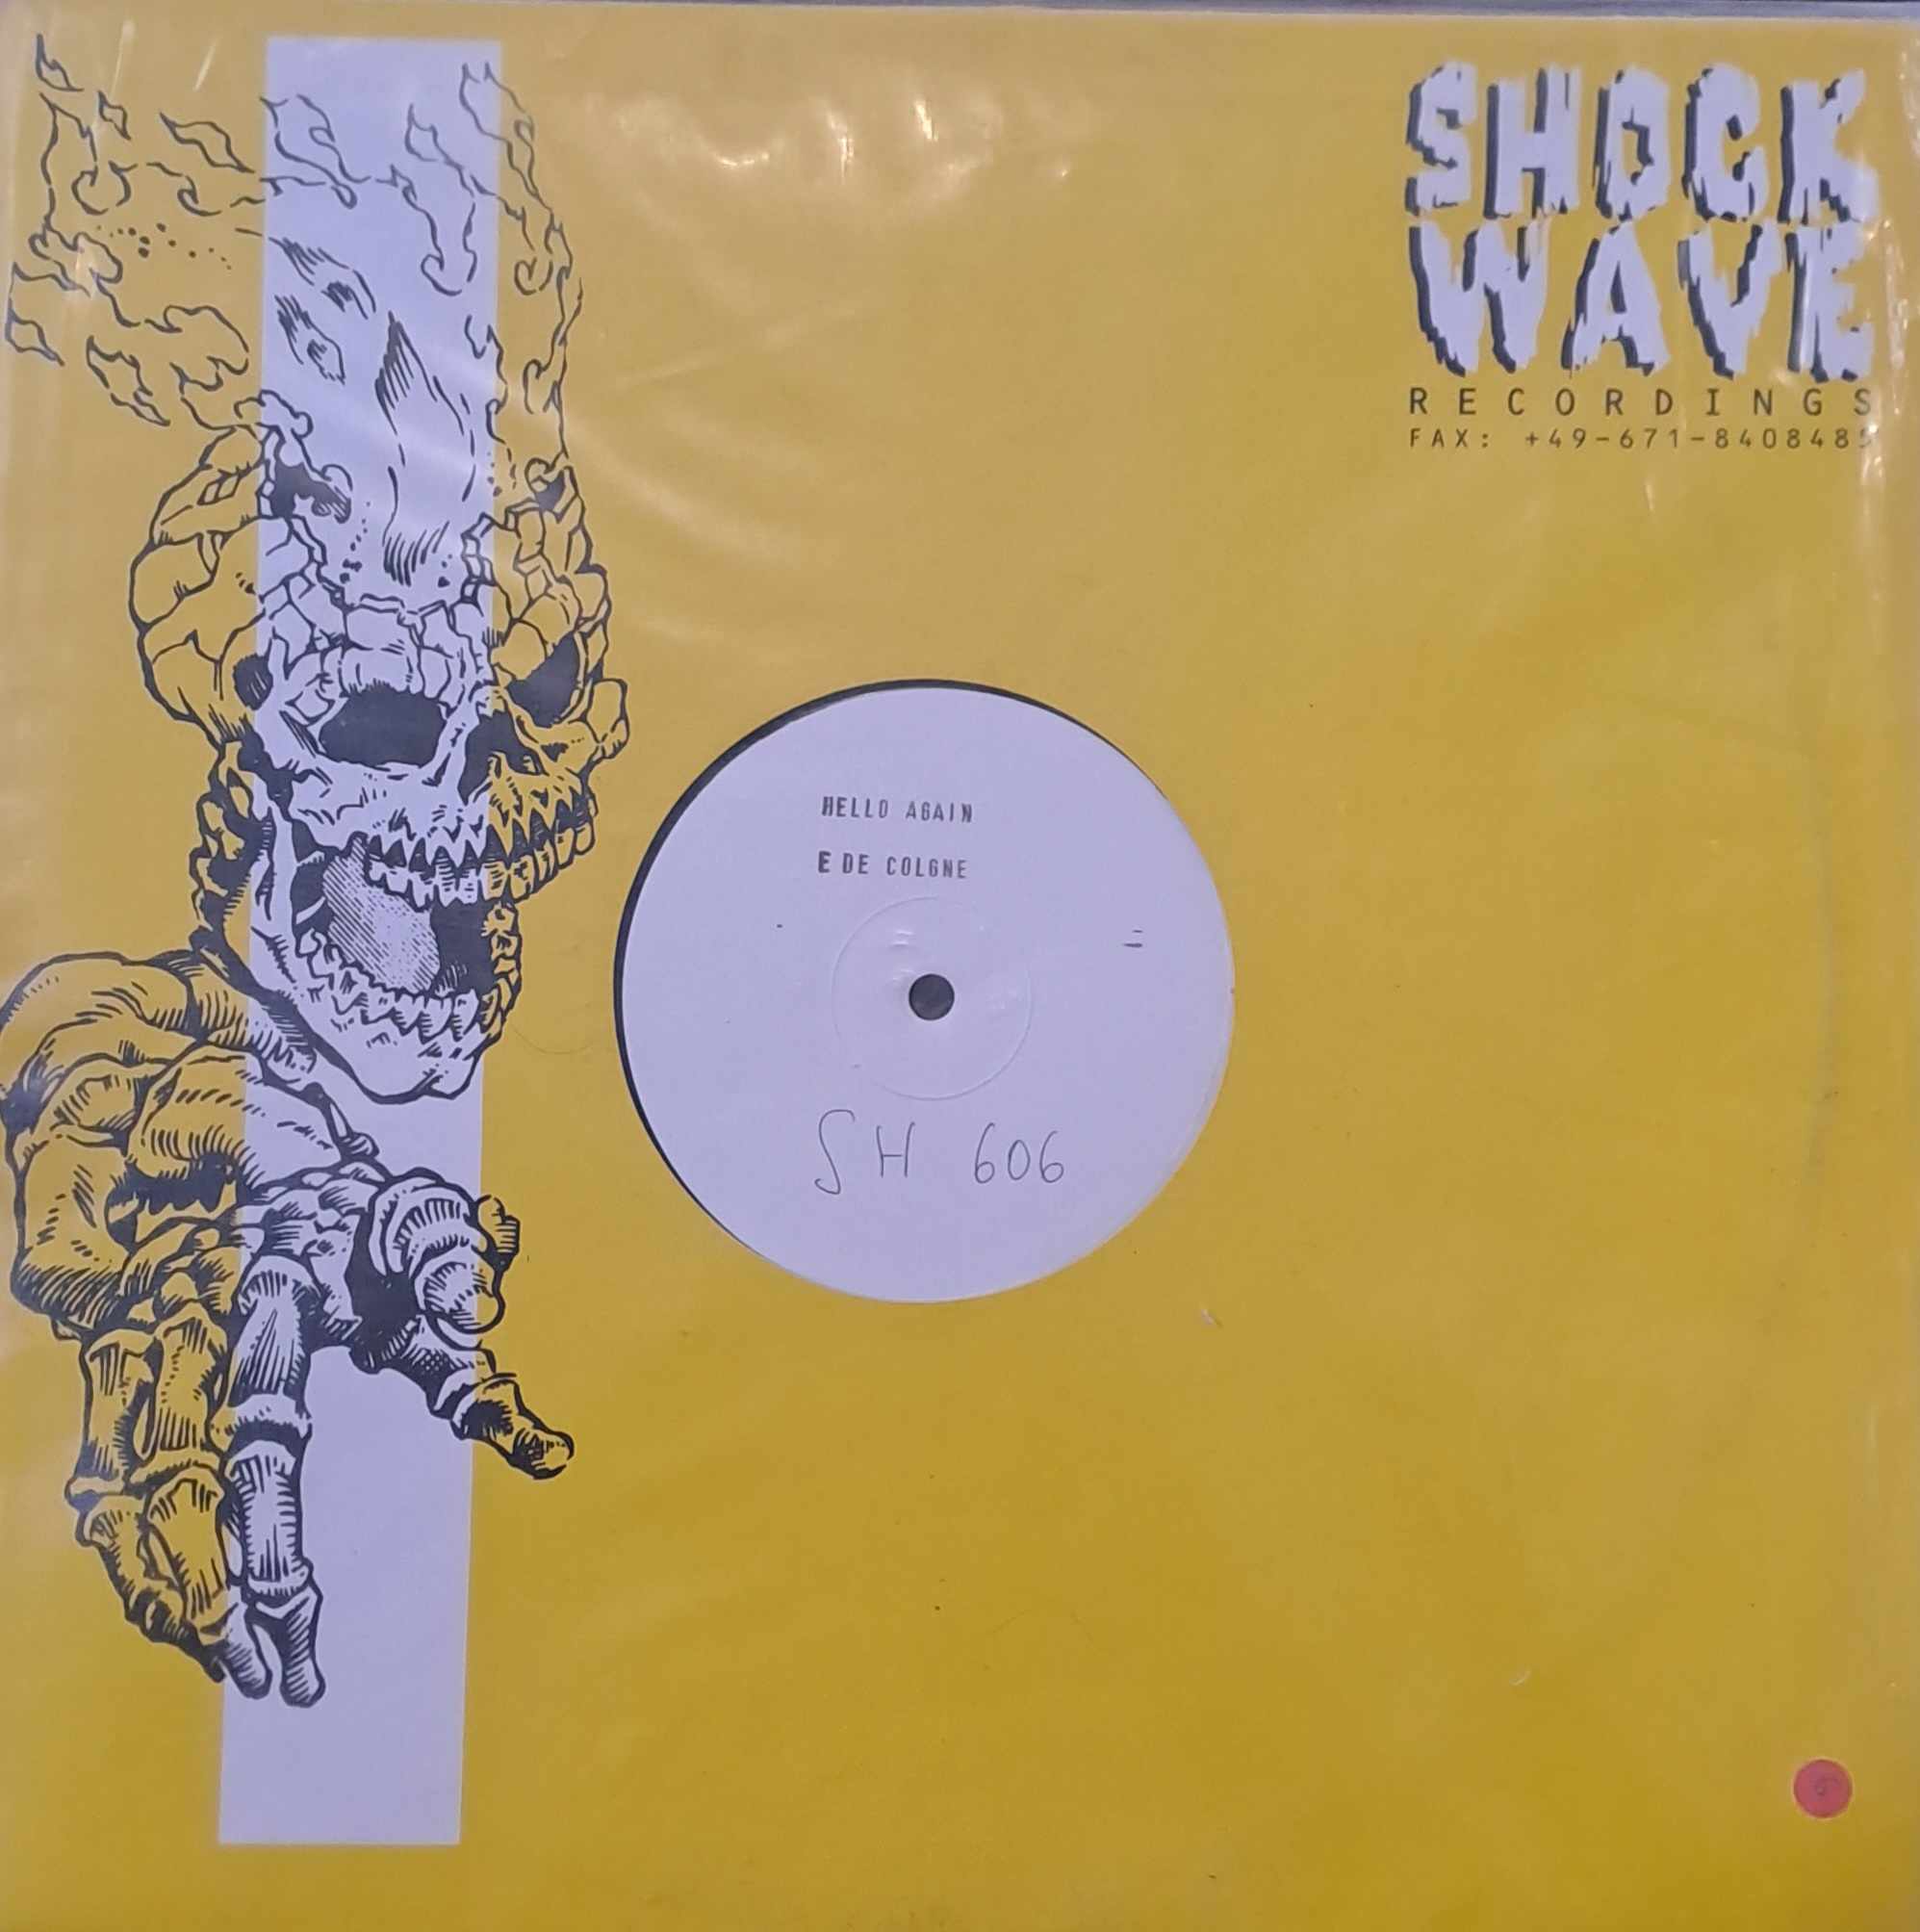 Shockwave Recordings 606 (White Label) - vinyle gabber